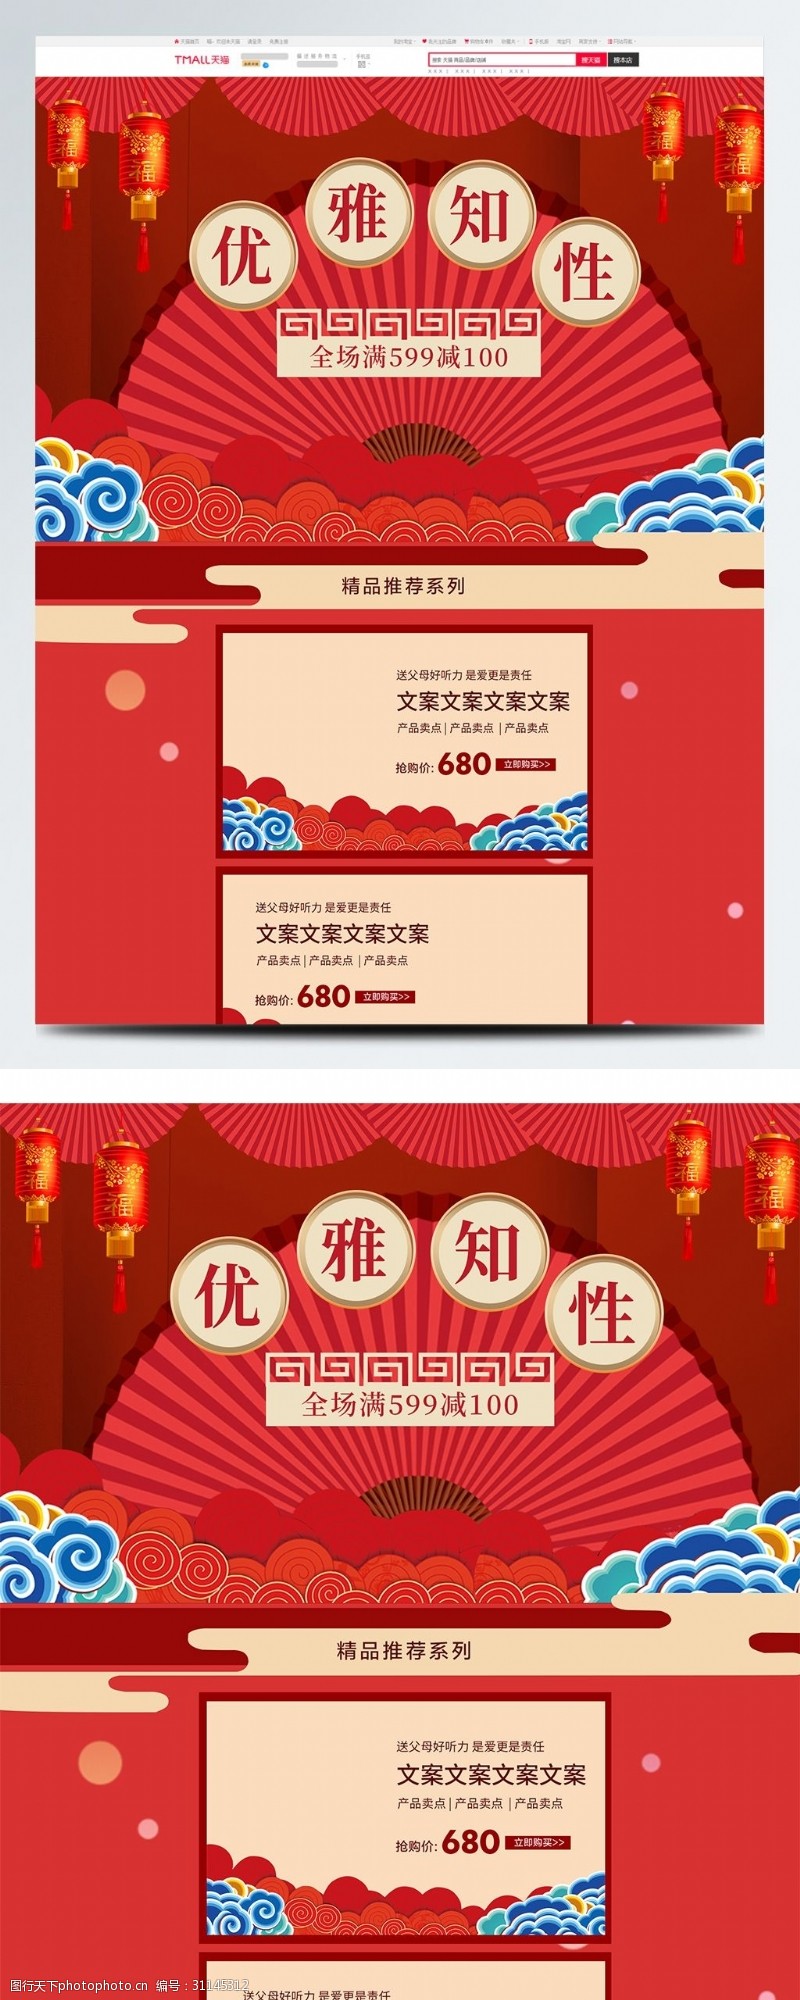 年货盛典淘宝天猫红色中国风首页装修模板